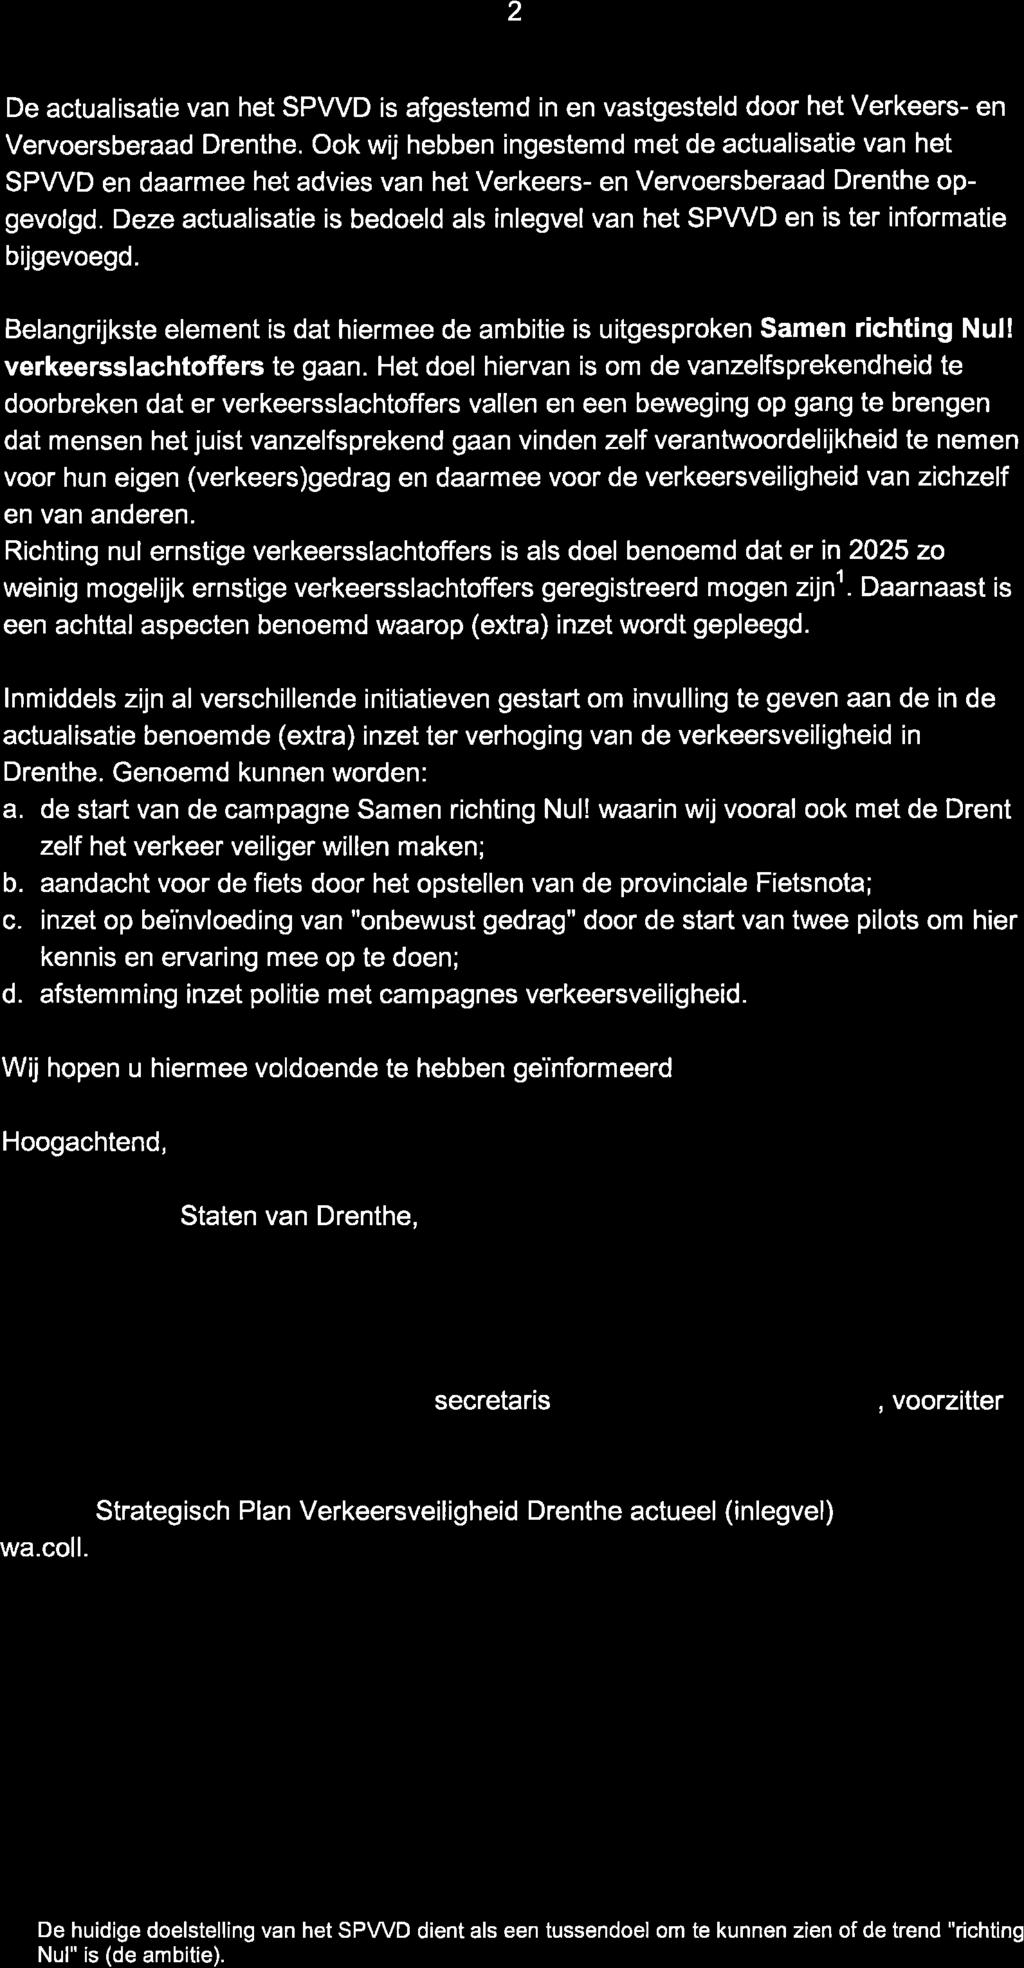 2 De actualisatie van het SPWD is afgestemd in en vastgesteld door het Verkeers- en Vervoersberaad Drenthe.